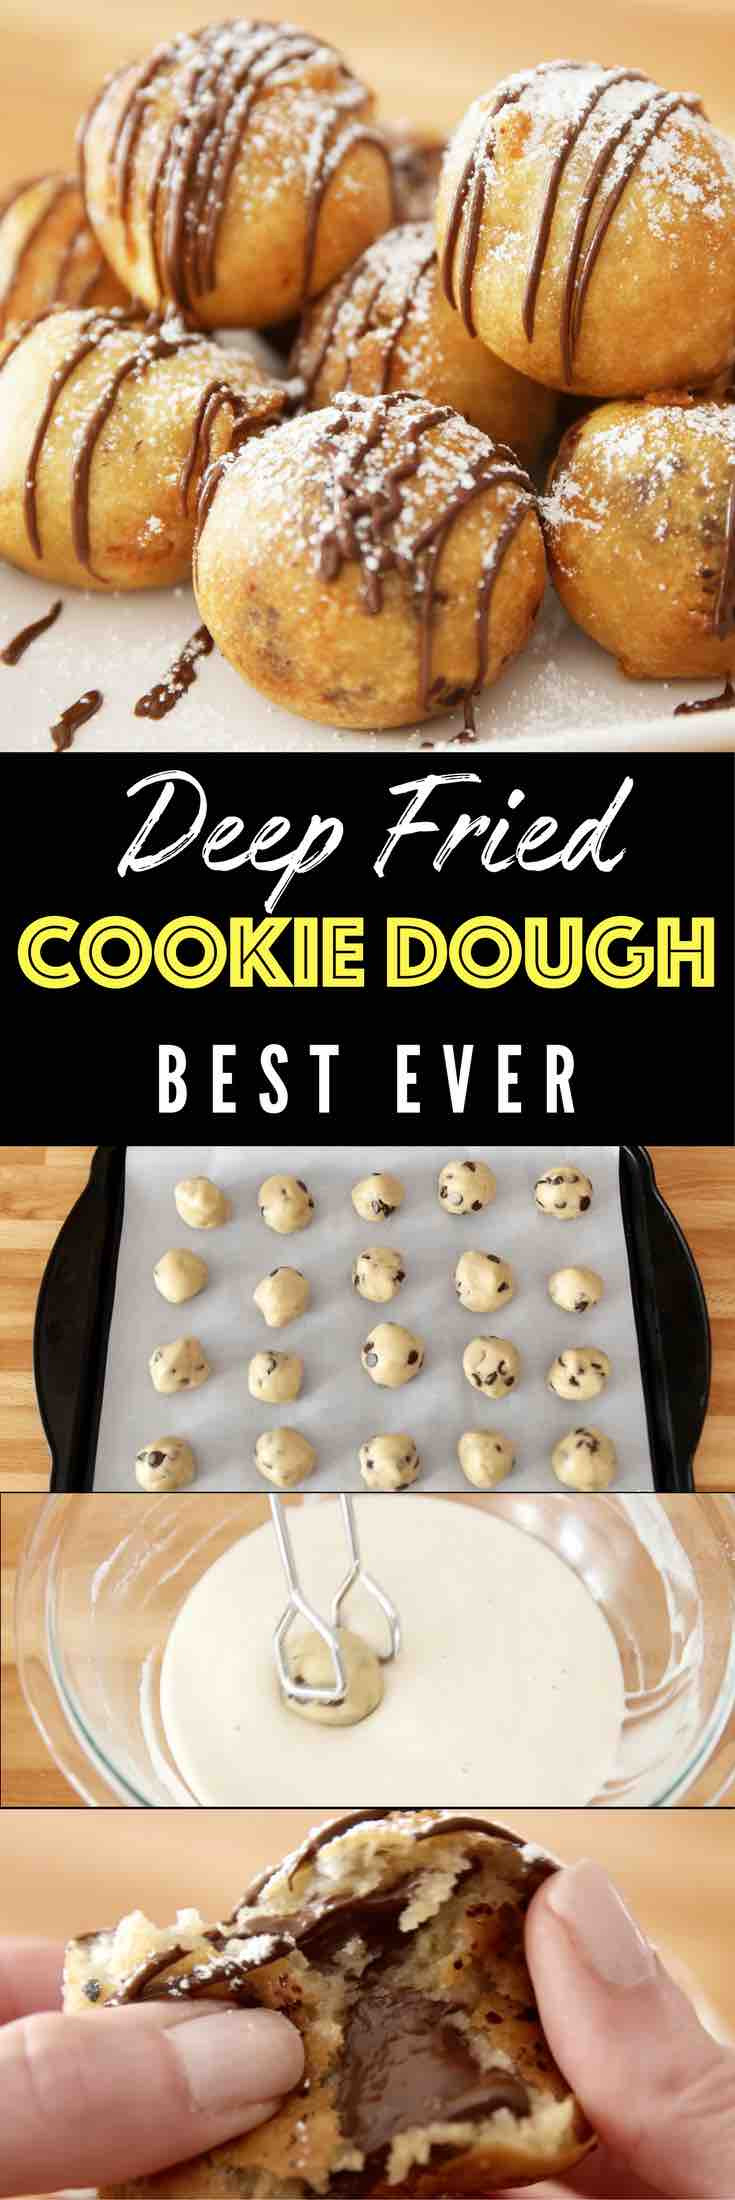 Deep Fried Dessert Recipes
 Deep Fried Cookie Dough TipBuzz